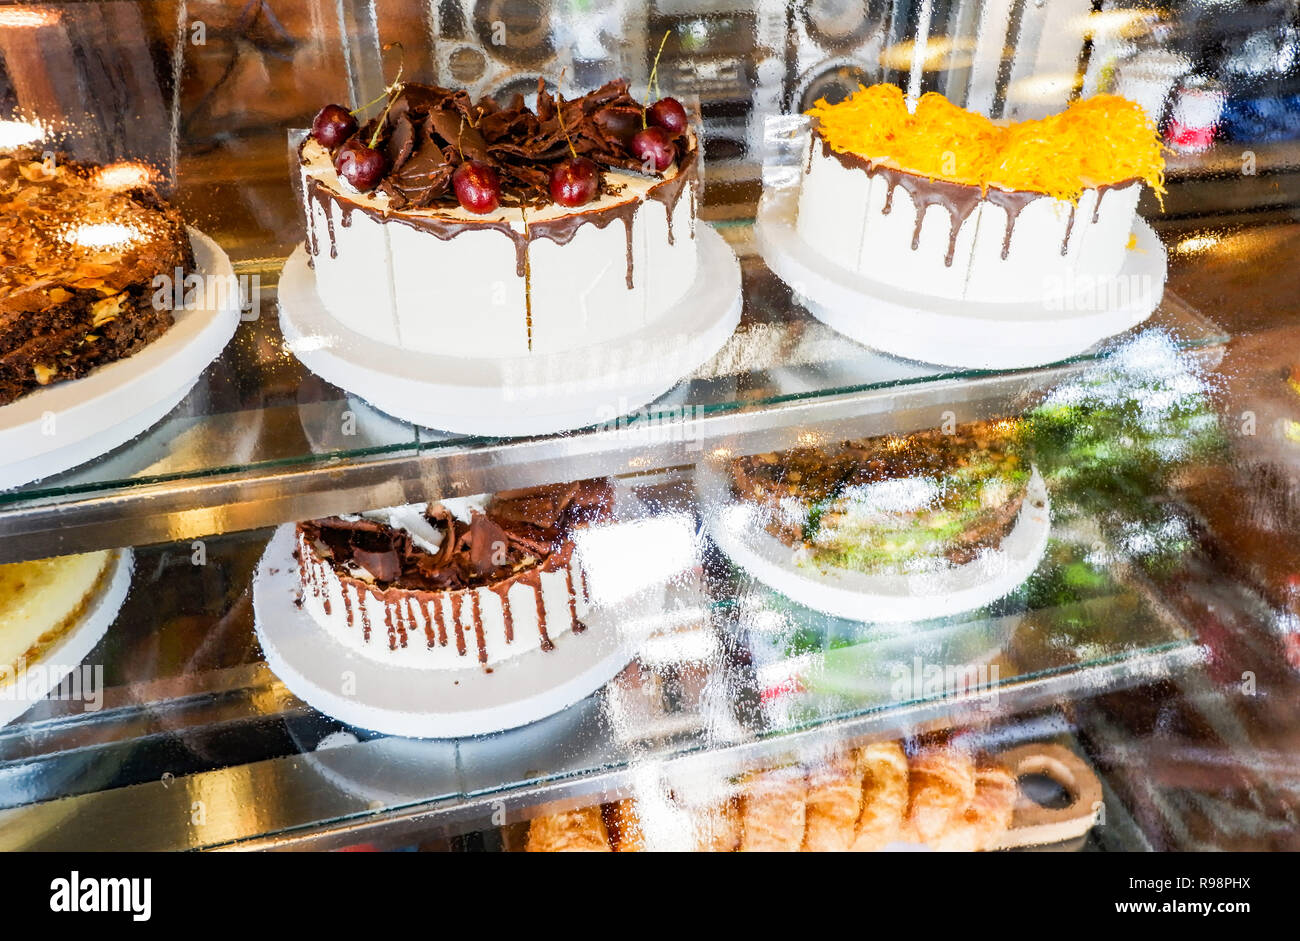 Dans showcase / gâteau gâteau bac en verre affichage à rayon boulangerie pâtisserie - vitrine avec des bonbons les gâteaux au chocolat selective focus Banque D'Images